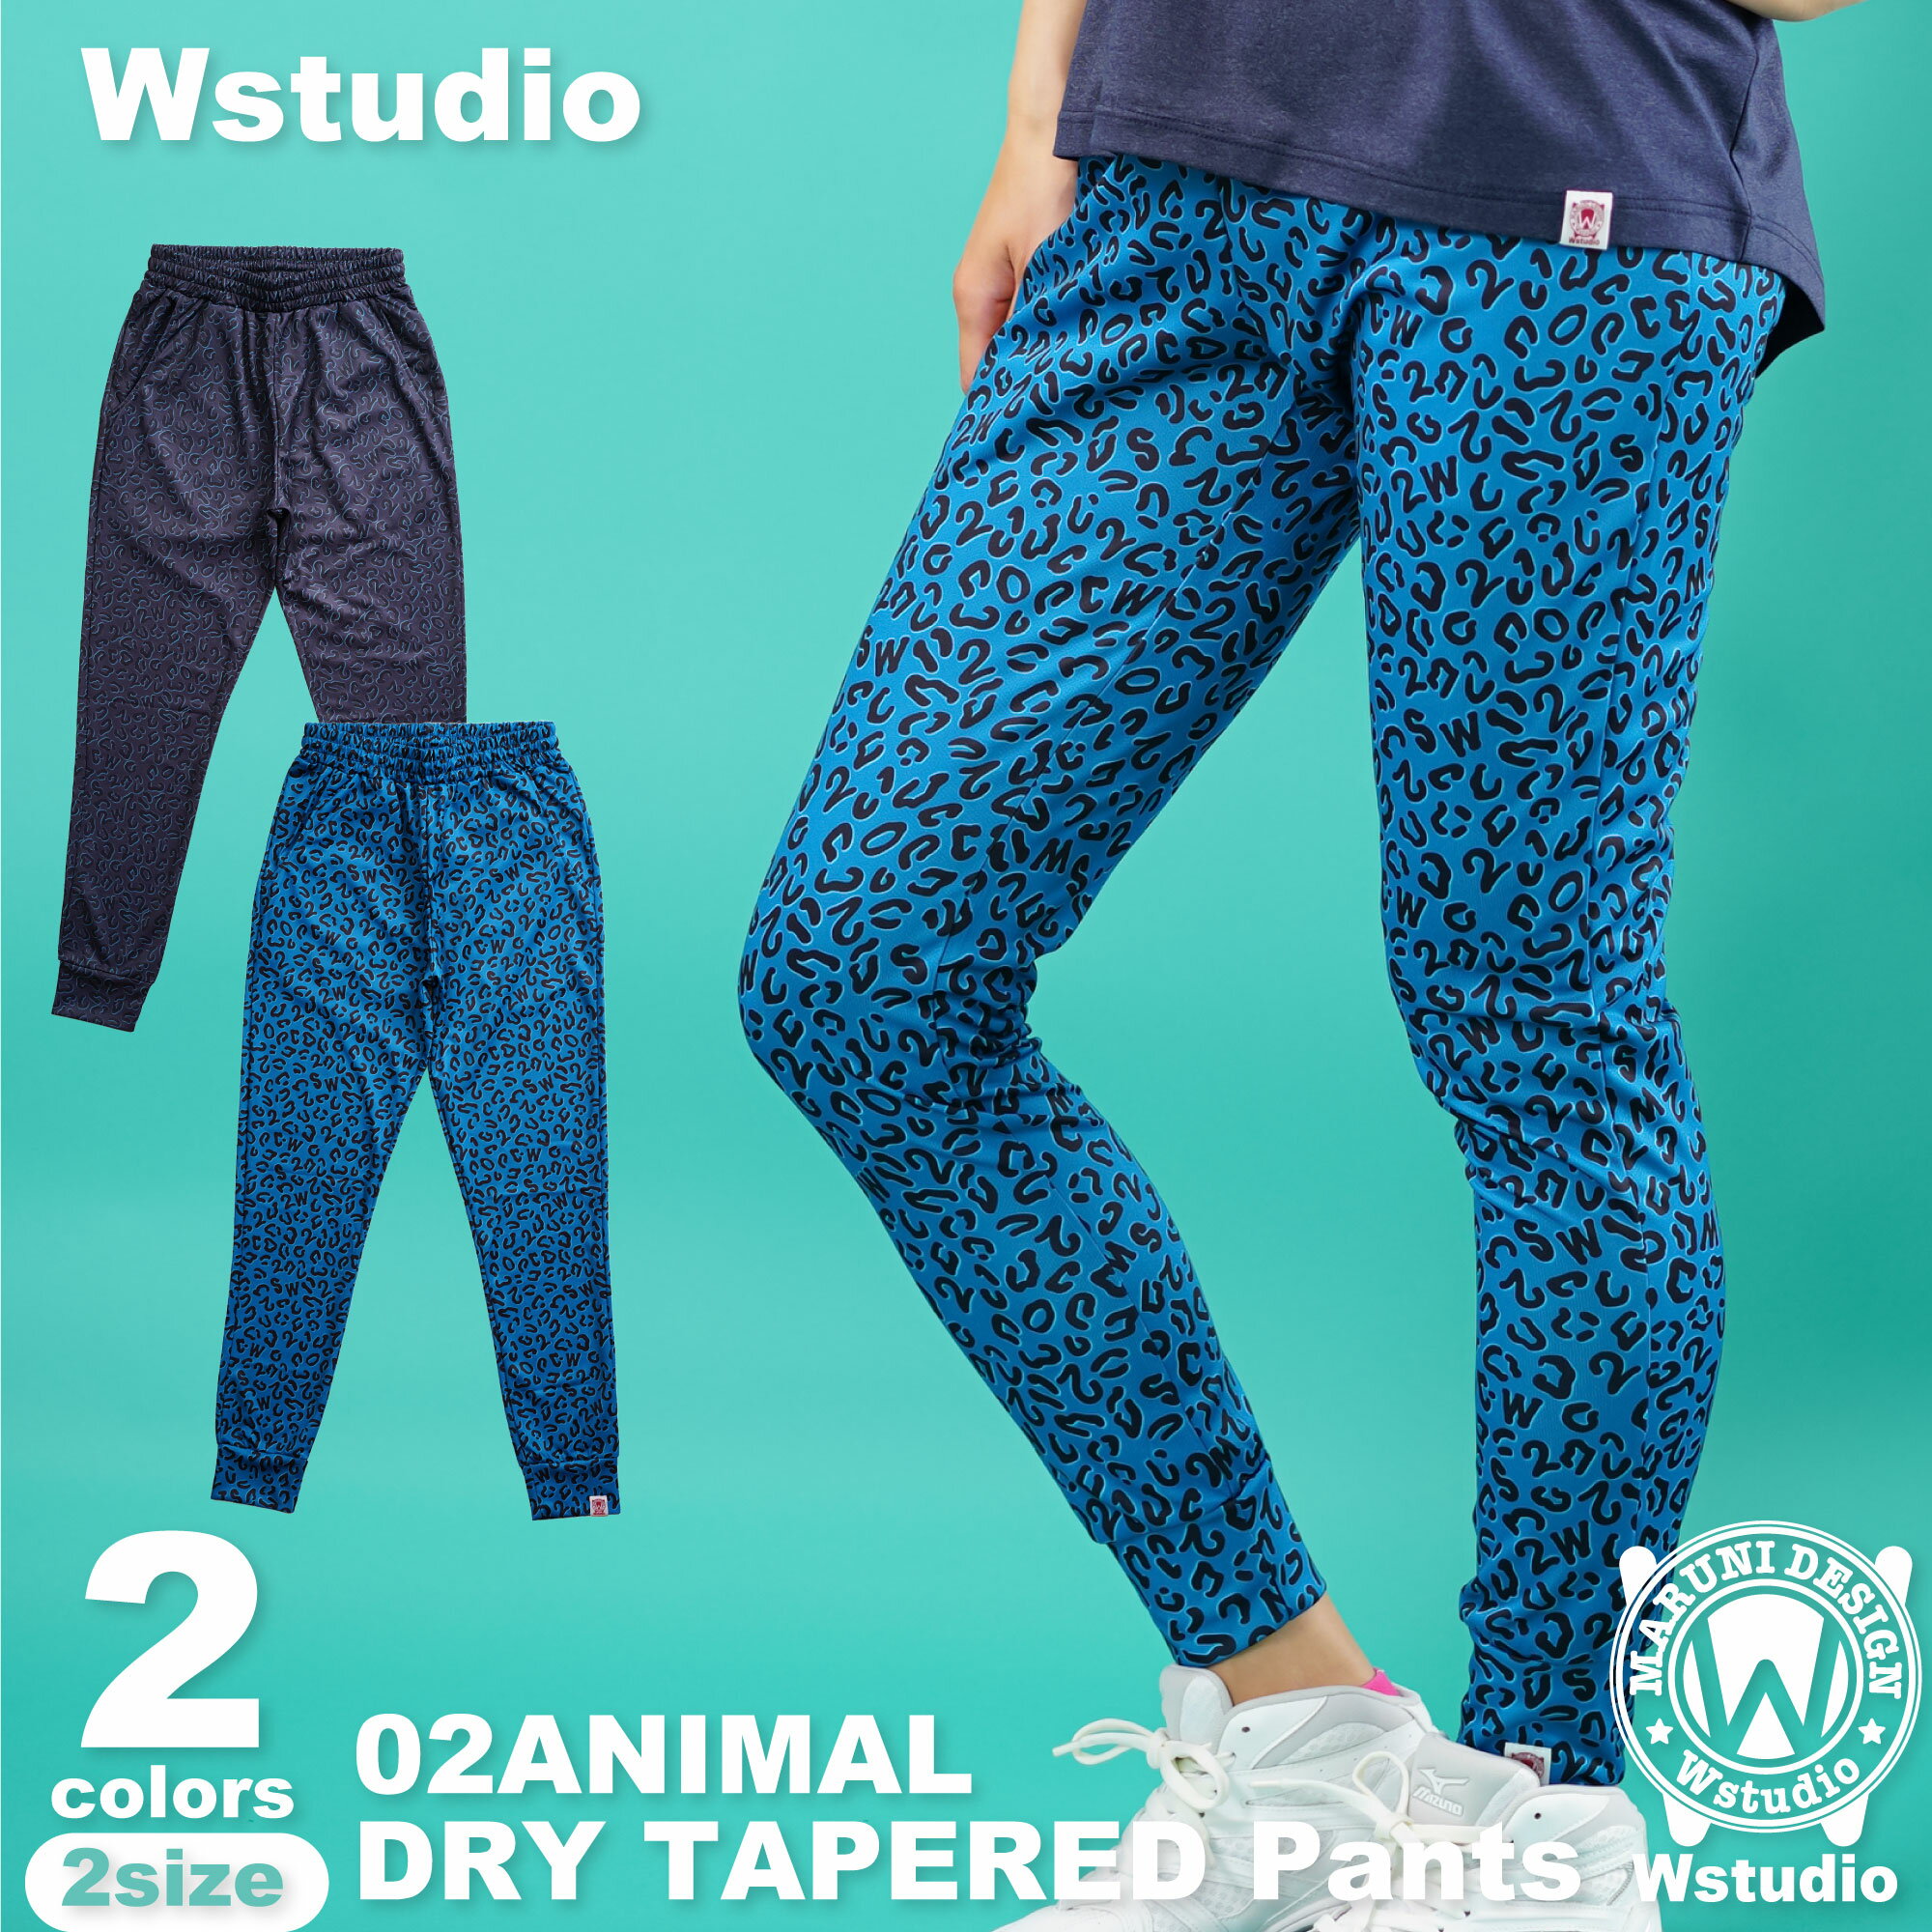 【送料無料】Wstudio ダブルスタジオ【2色 2サイズ】02ANIMAL DRY TAPERED Pants フィットネス ウェア スポーツ ウェア トレーニング ウェア レディース メンズ ユニセックス ダンス エアロ ス…